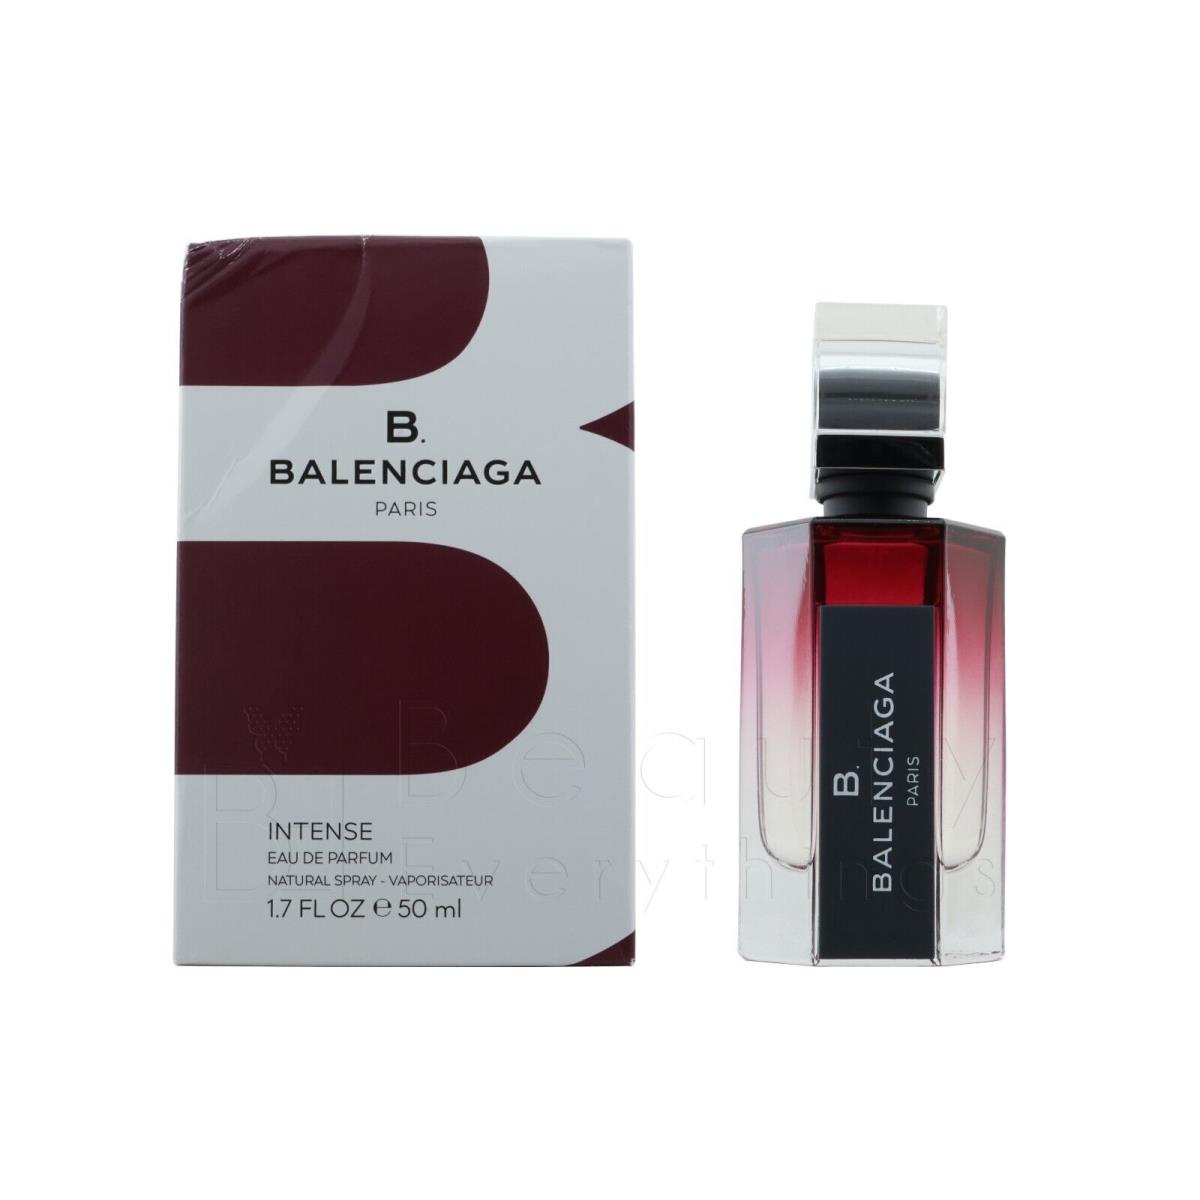 B Balenciaga Intense by Balenciaga 1.7oz / 50ml Edp Spray Dented Box For Women